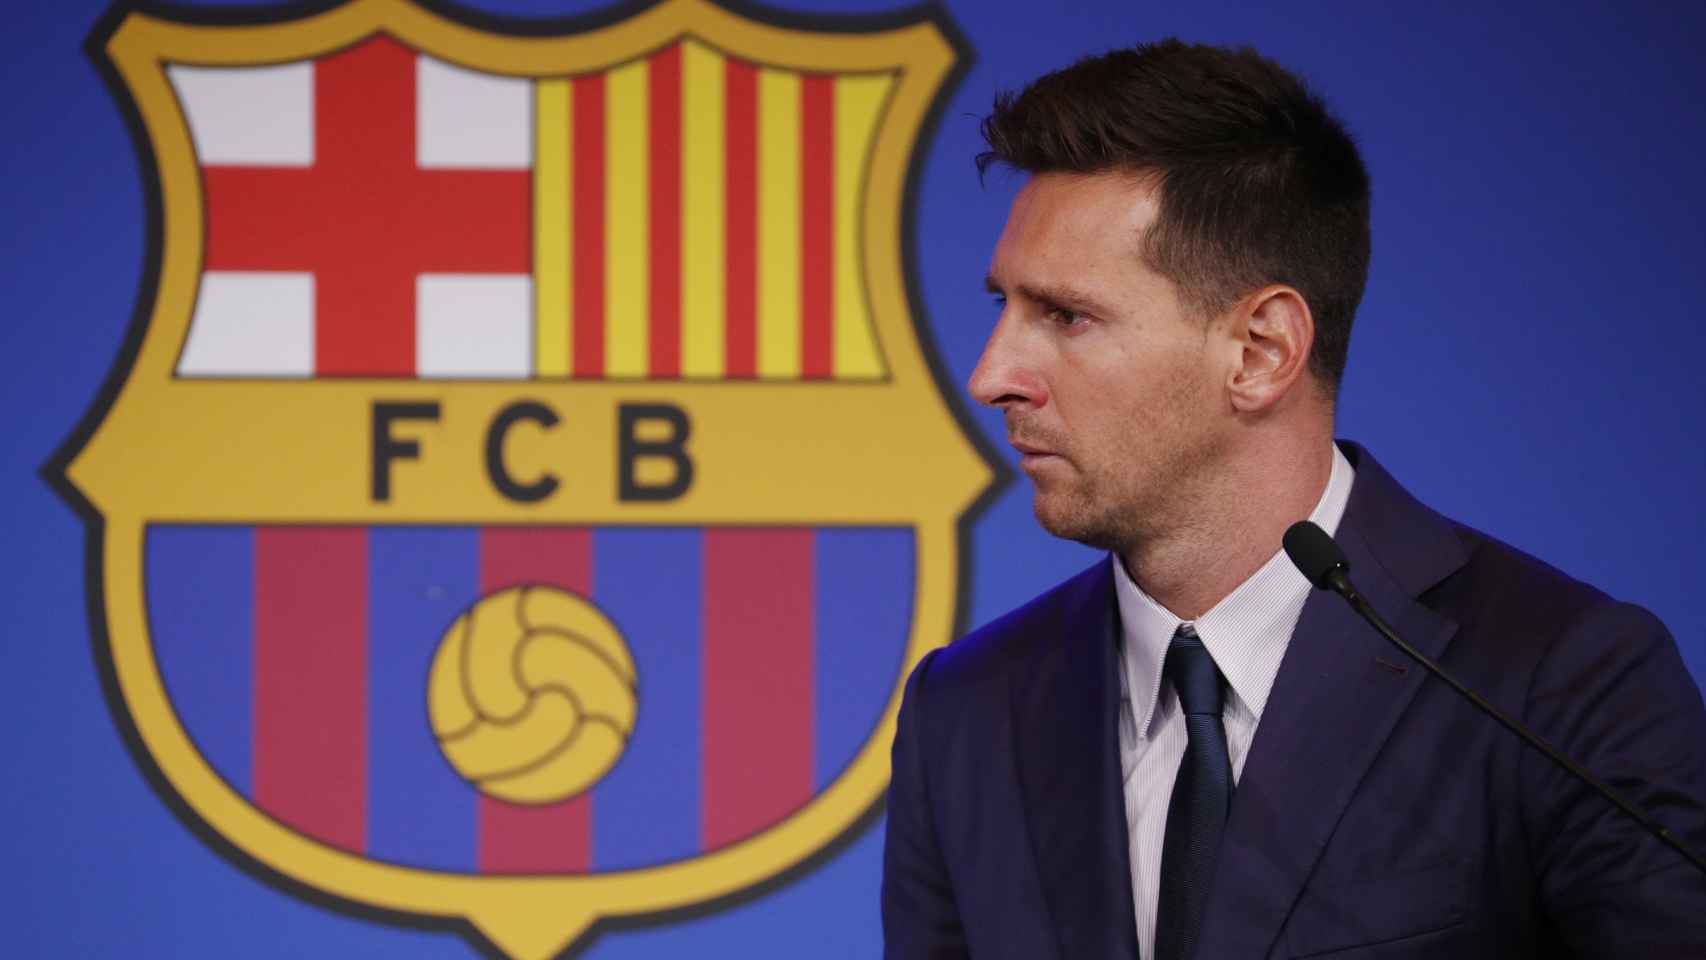 Leo Messi, emocionado en la rueda de prensa de su despedida del Barça